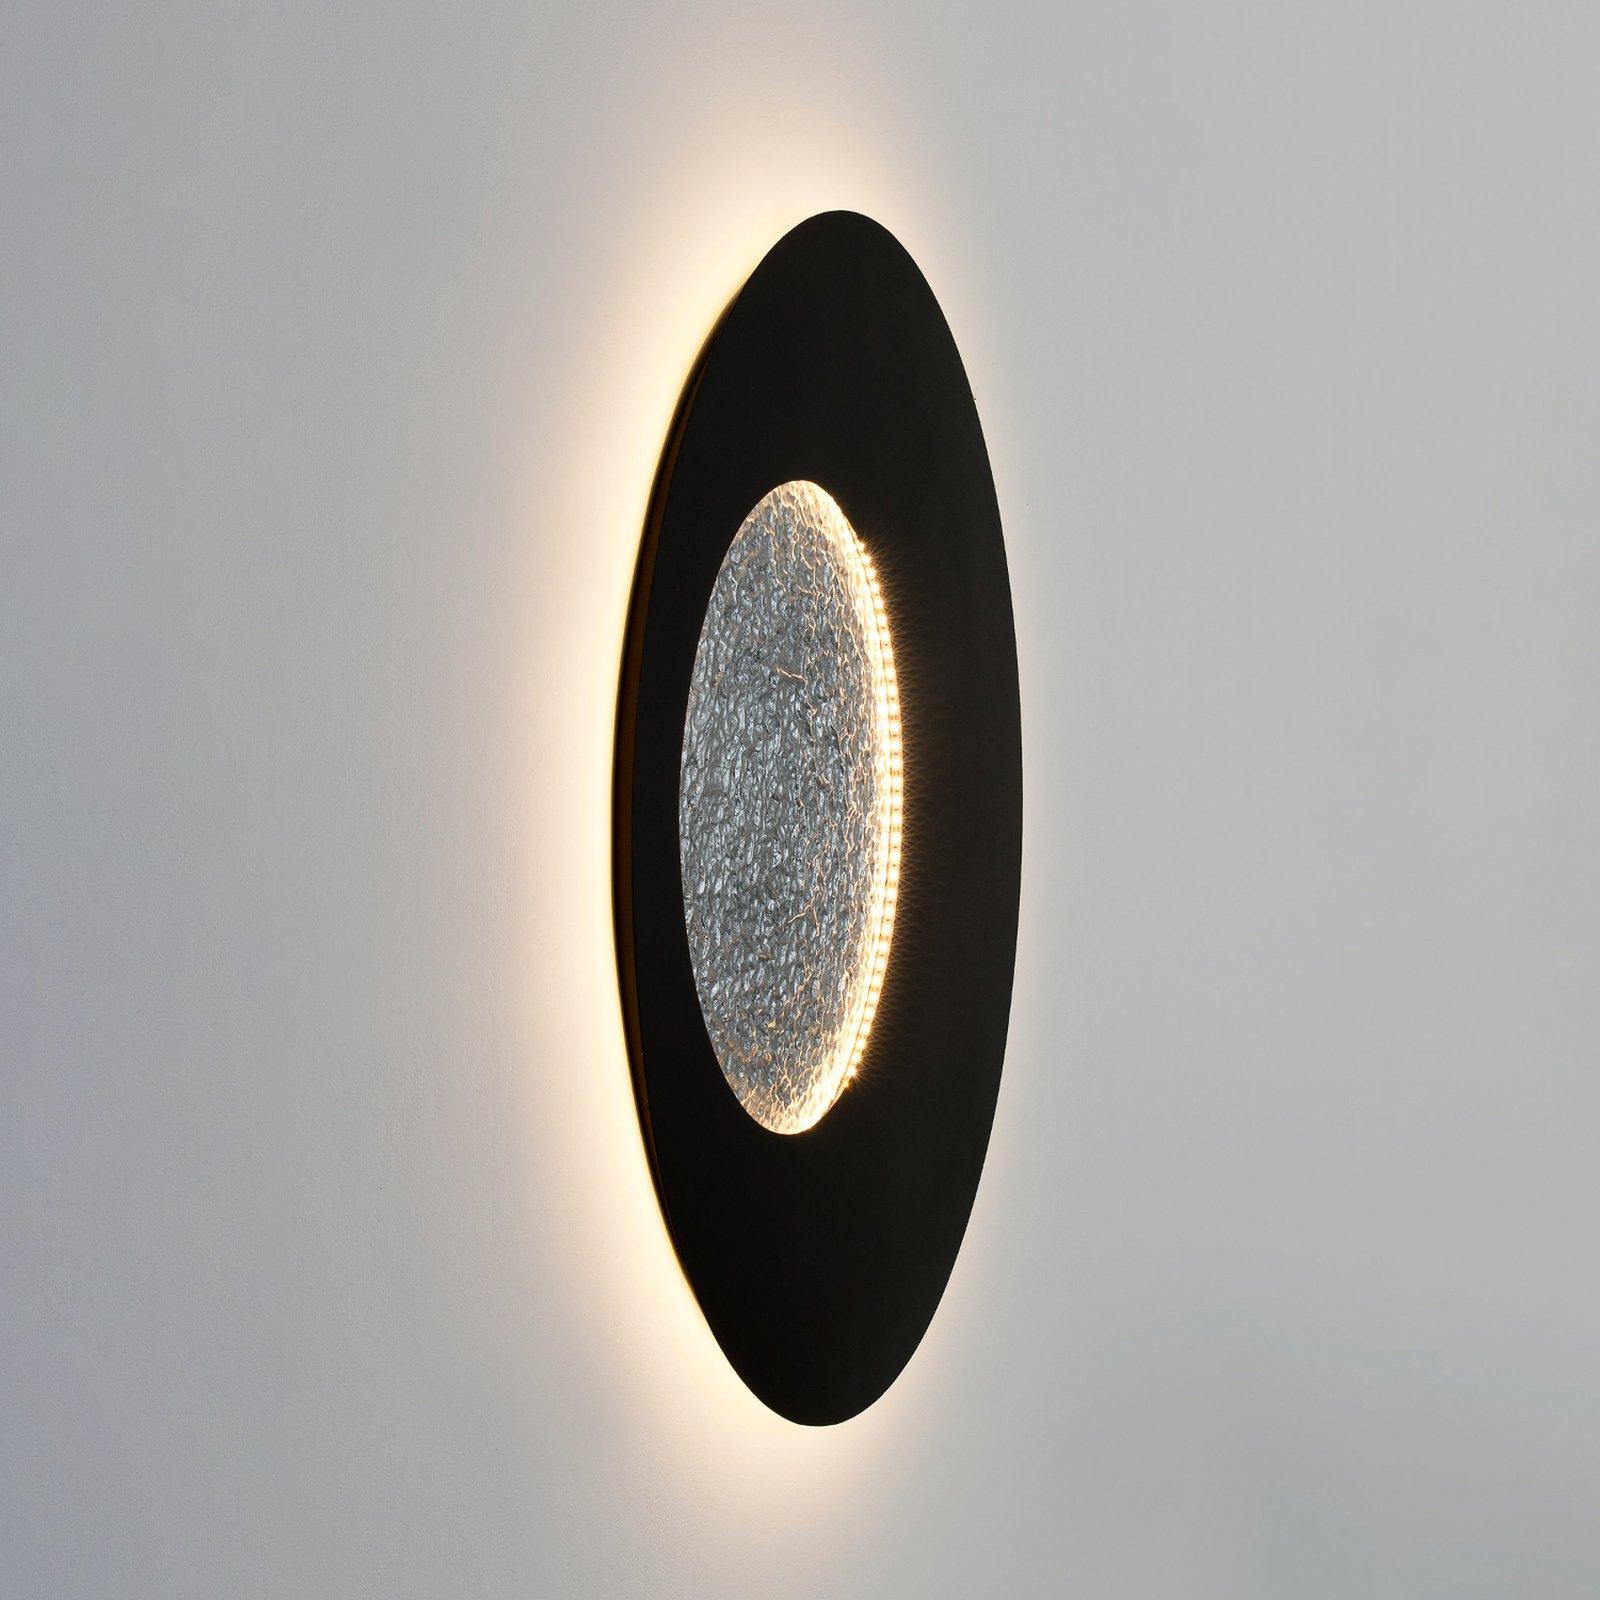 LED-Wandleuchte Luna, braun-schwarz/silber, Ø 120 cm, Eisen